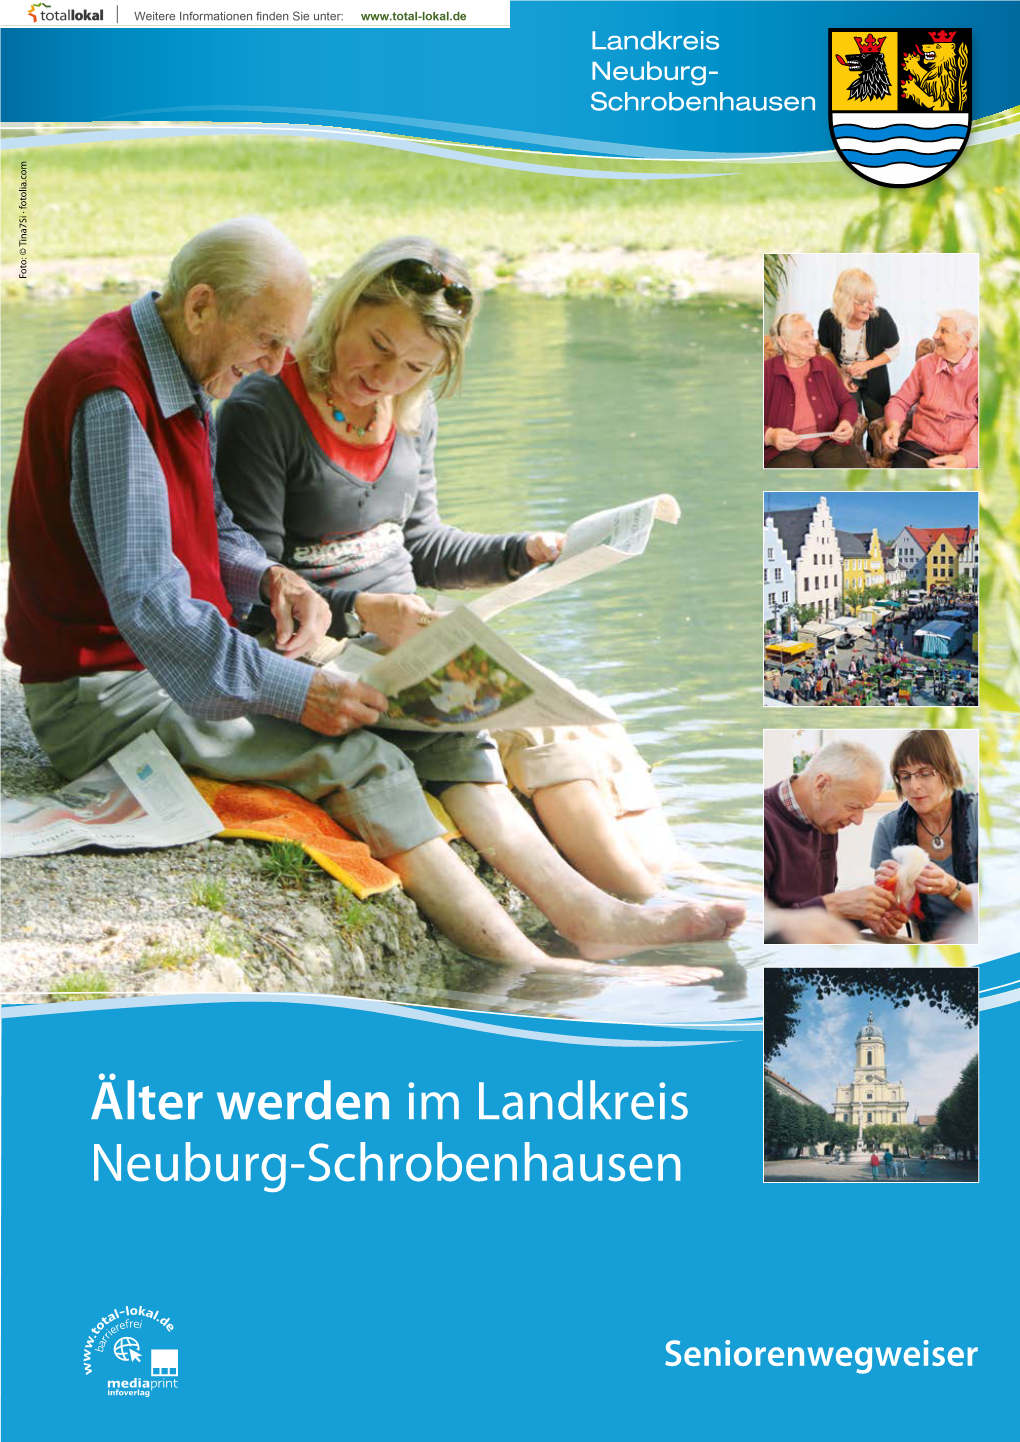 Älter Werden Im Landkreis Neuburg-Schrobenhausen